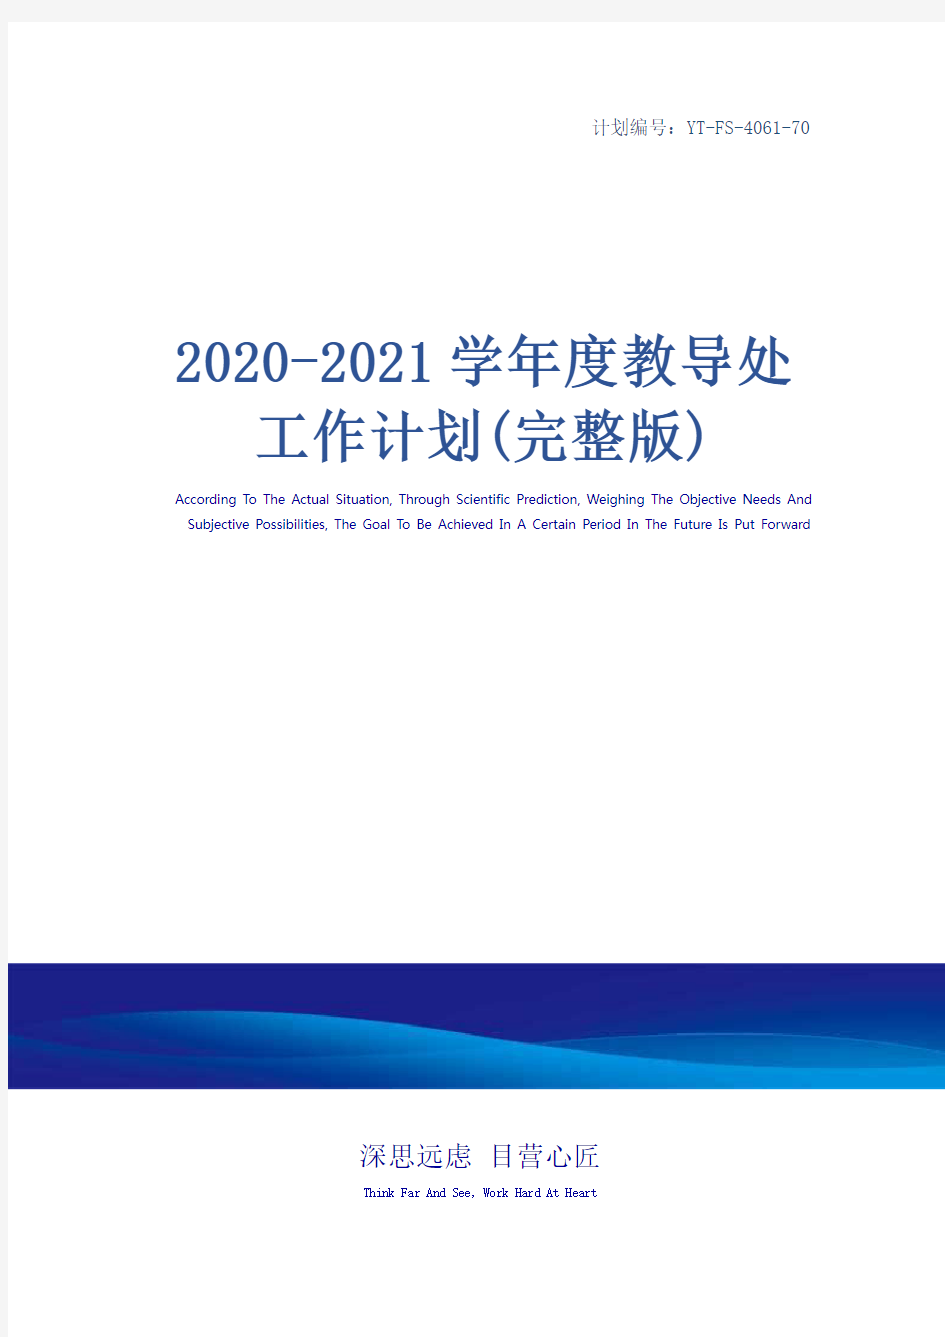 2020-2021学年度教导处工作计划(完整版)